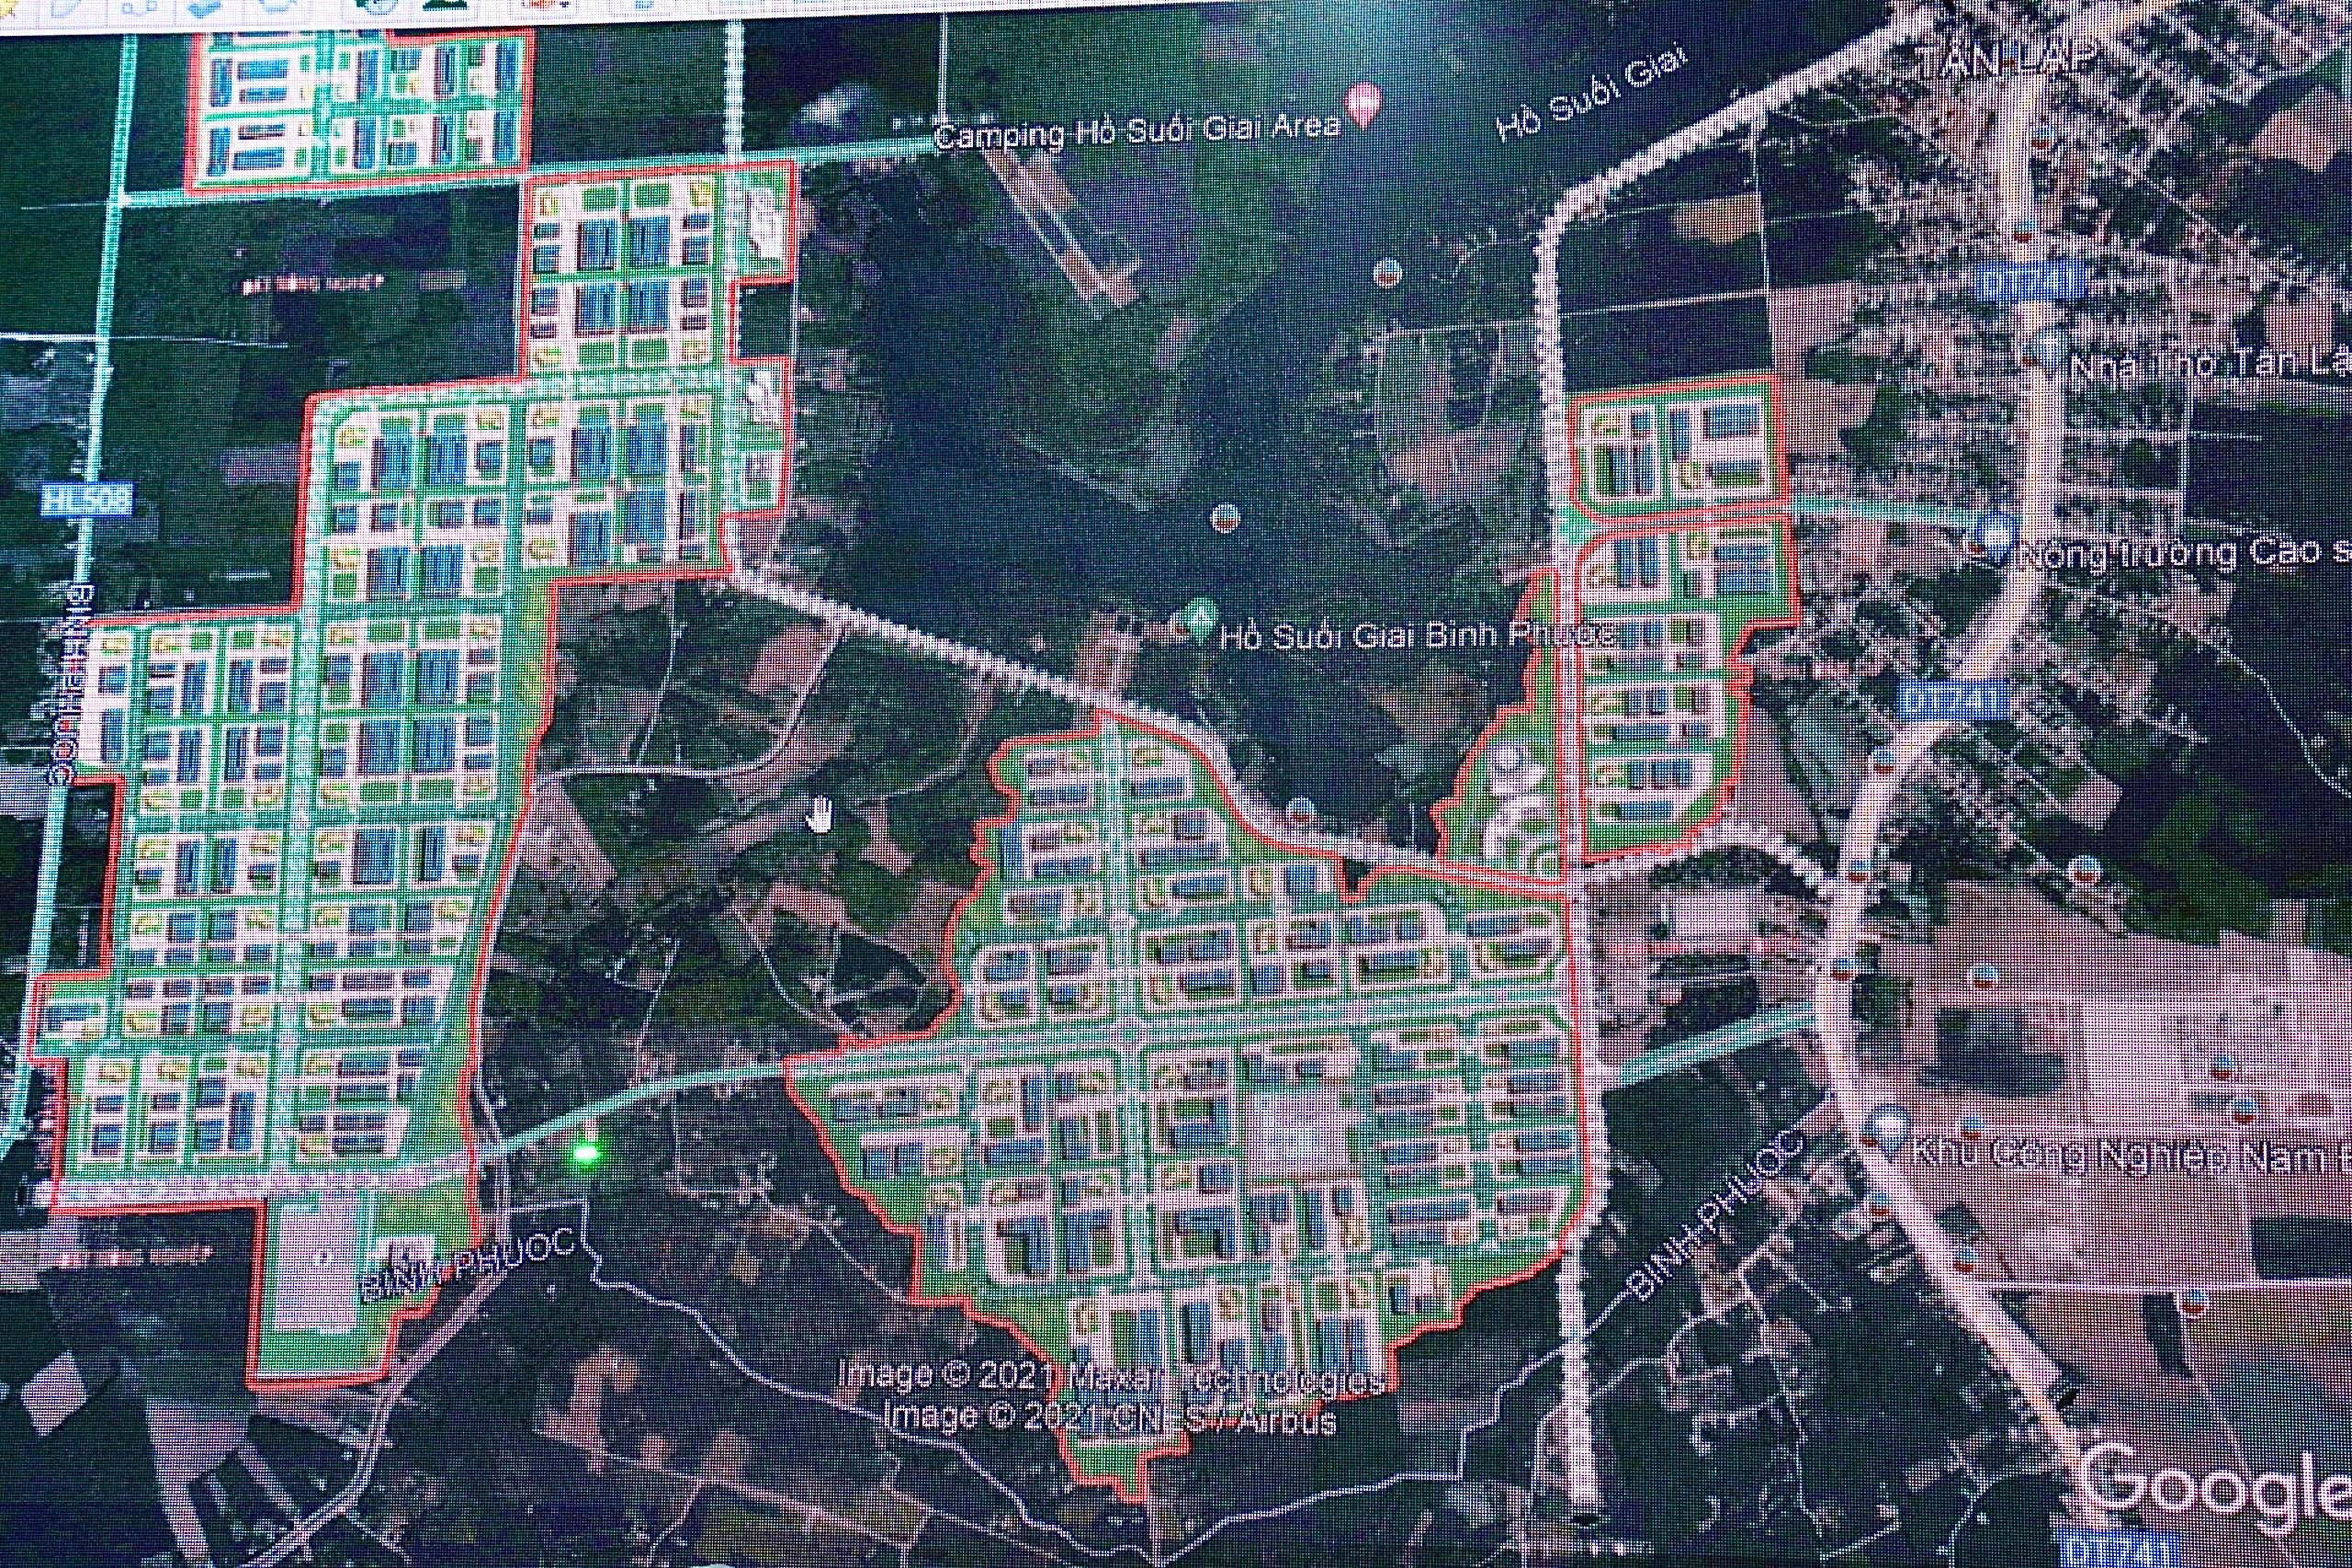 Quy hoạch Đồng Phú - Bình Phước 2024 sẽ giúp để tạo ra một thành phố xanh và thân thiện với môi trường. Năm nay, sẽ có rất nhiều kế hoạch được triển khai để thúc đẩy sự phát triển bền vững. Hãy xem hình ảnh để khám phá thêm về quy hoạch của Đồng Phú vào năm